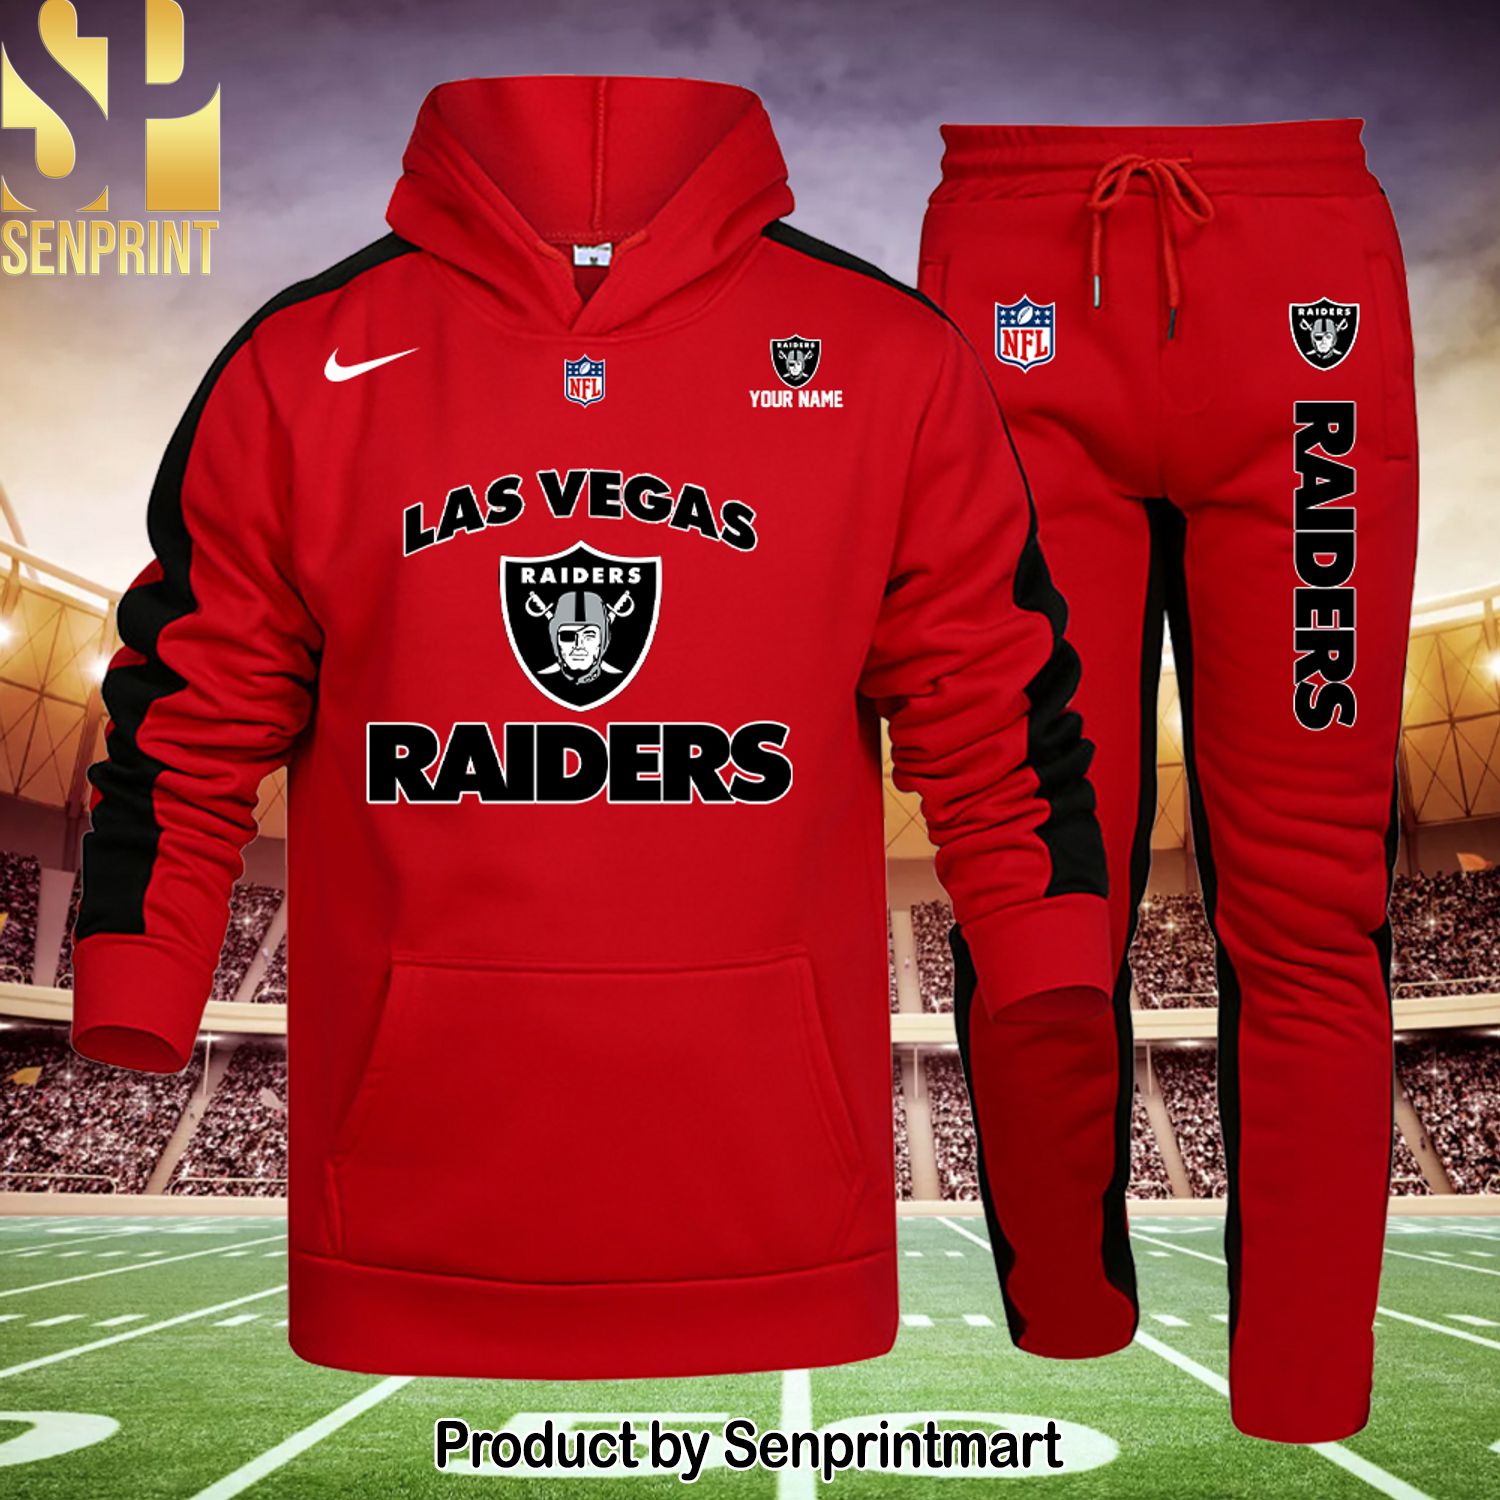 NFL Las Vegas Raiders Full Printed 3D Shirt and Pants